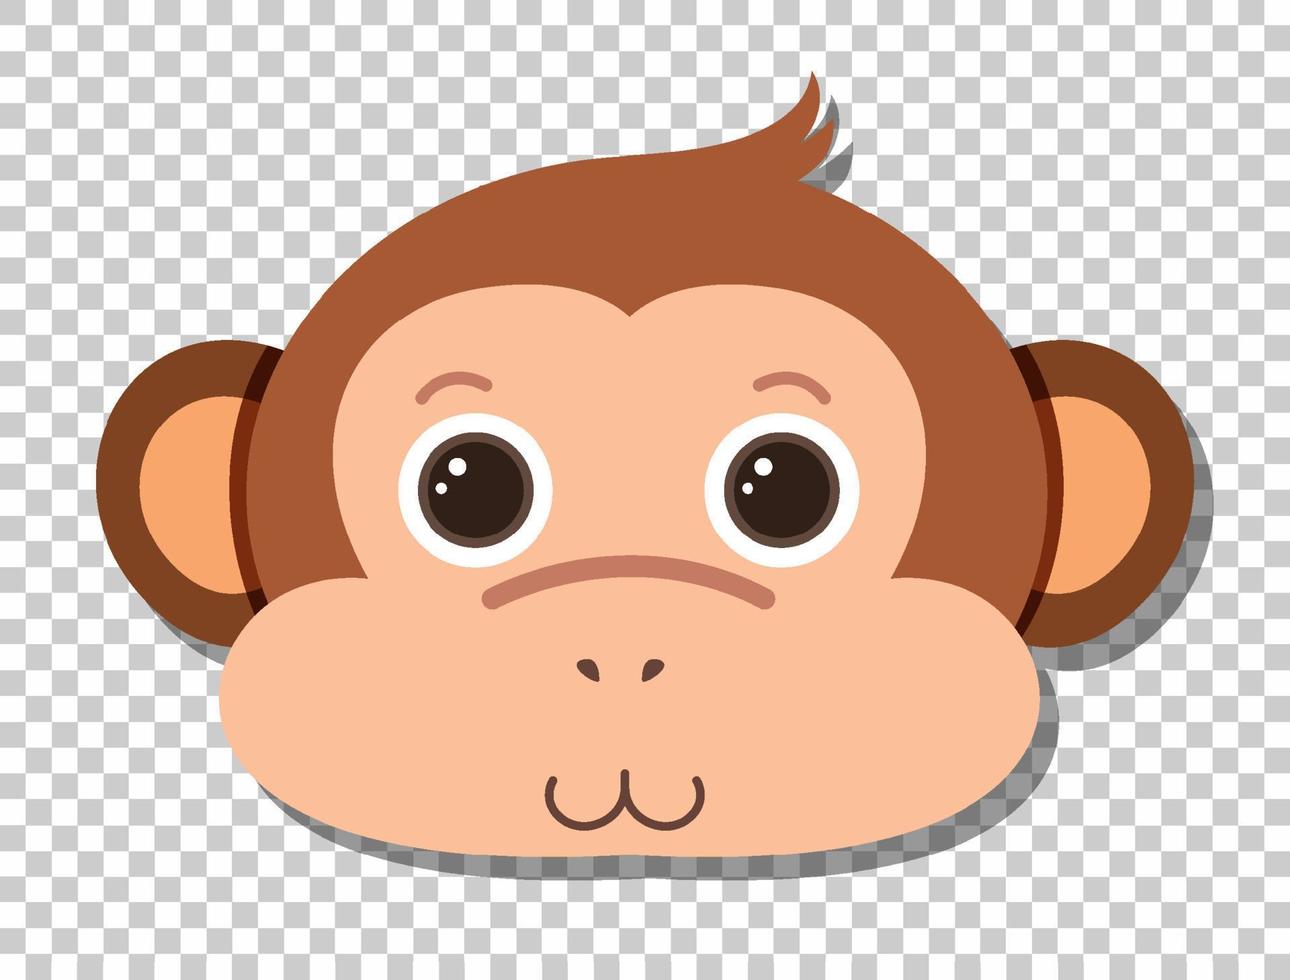 süßer Affenkopf im flachen Cartoon-Stil vektor